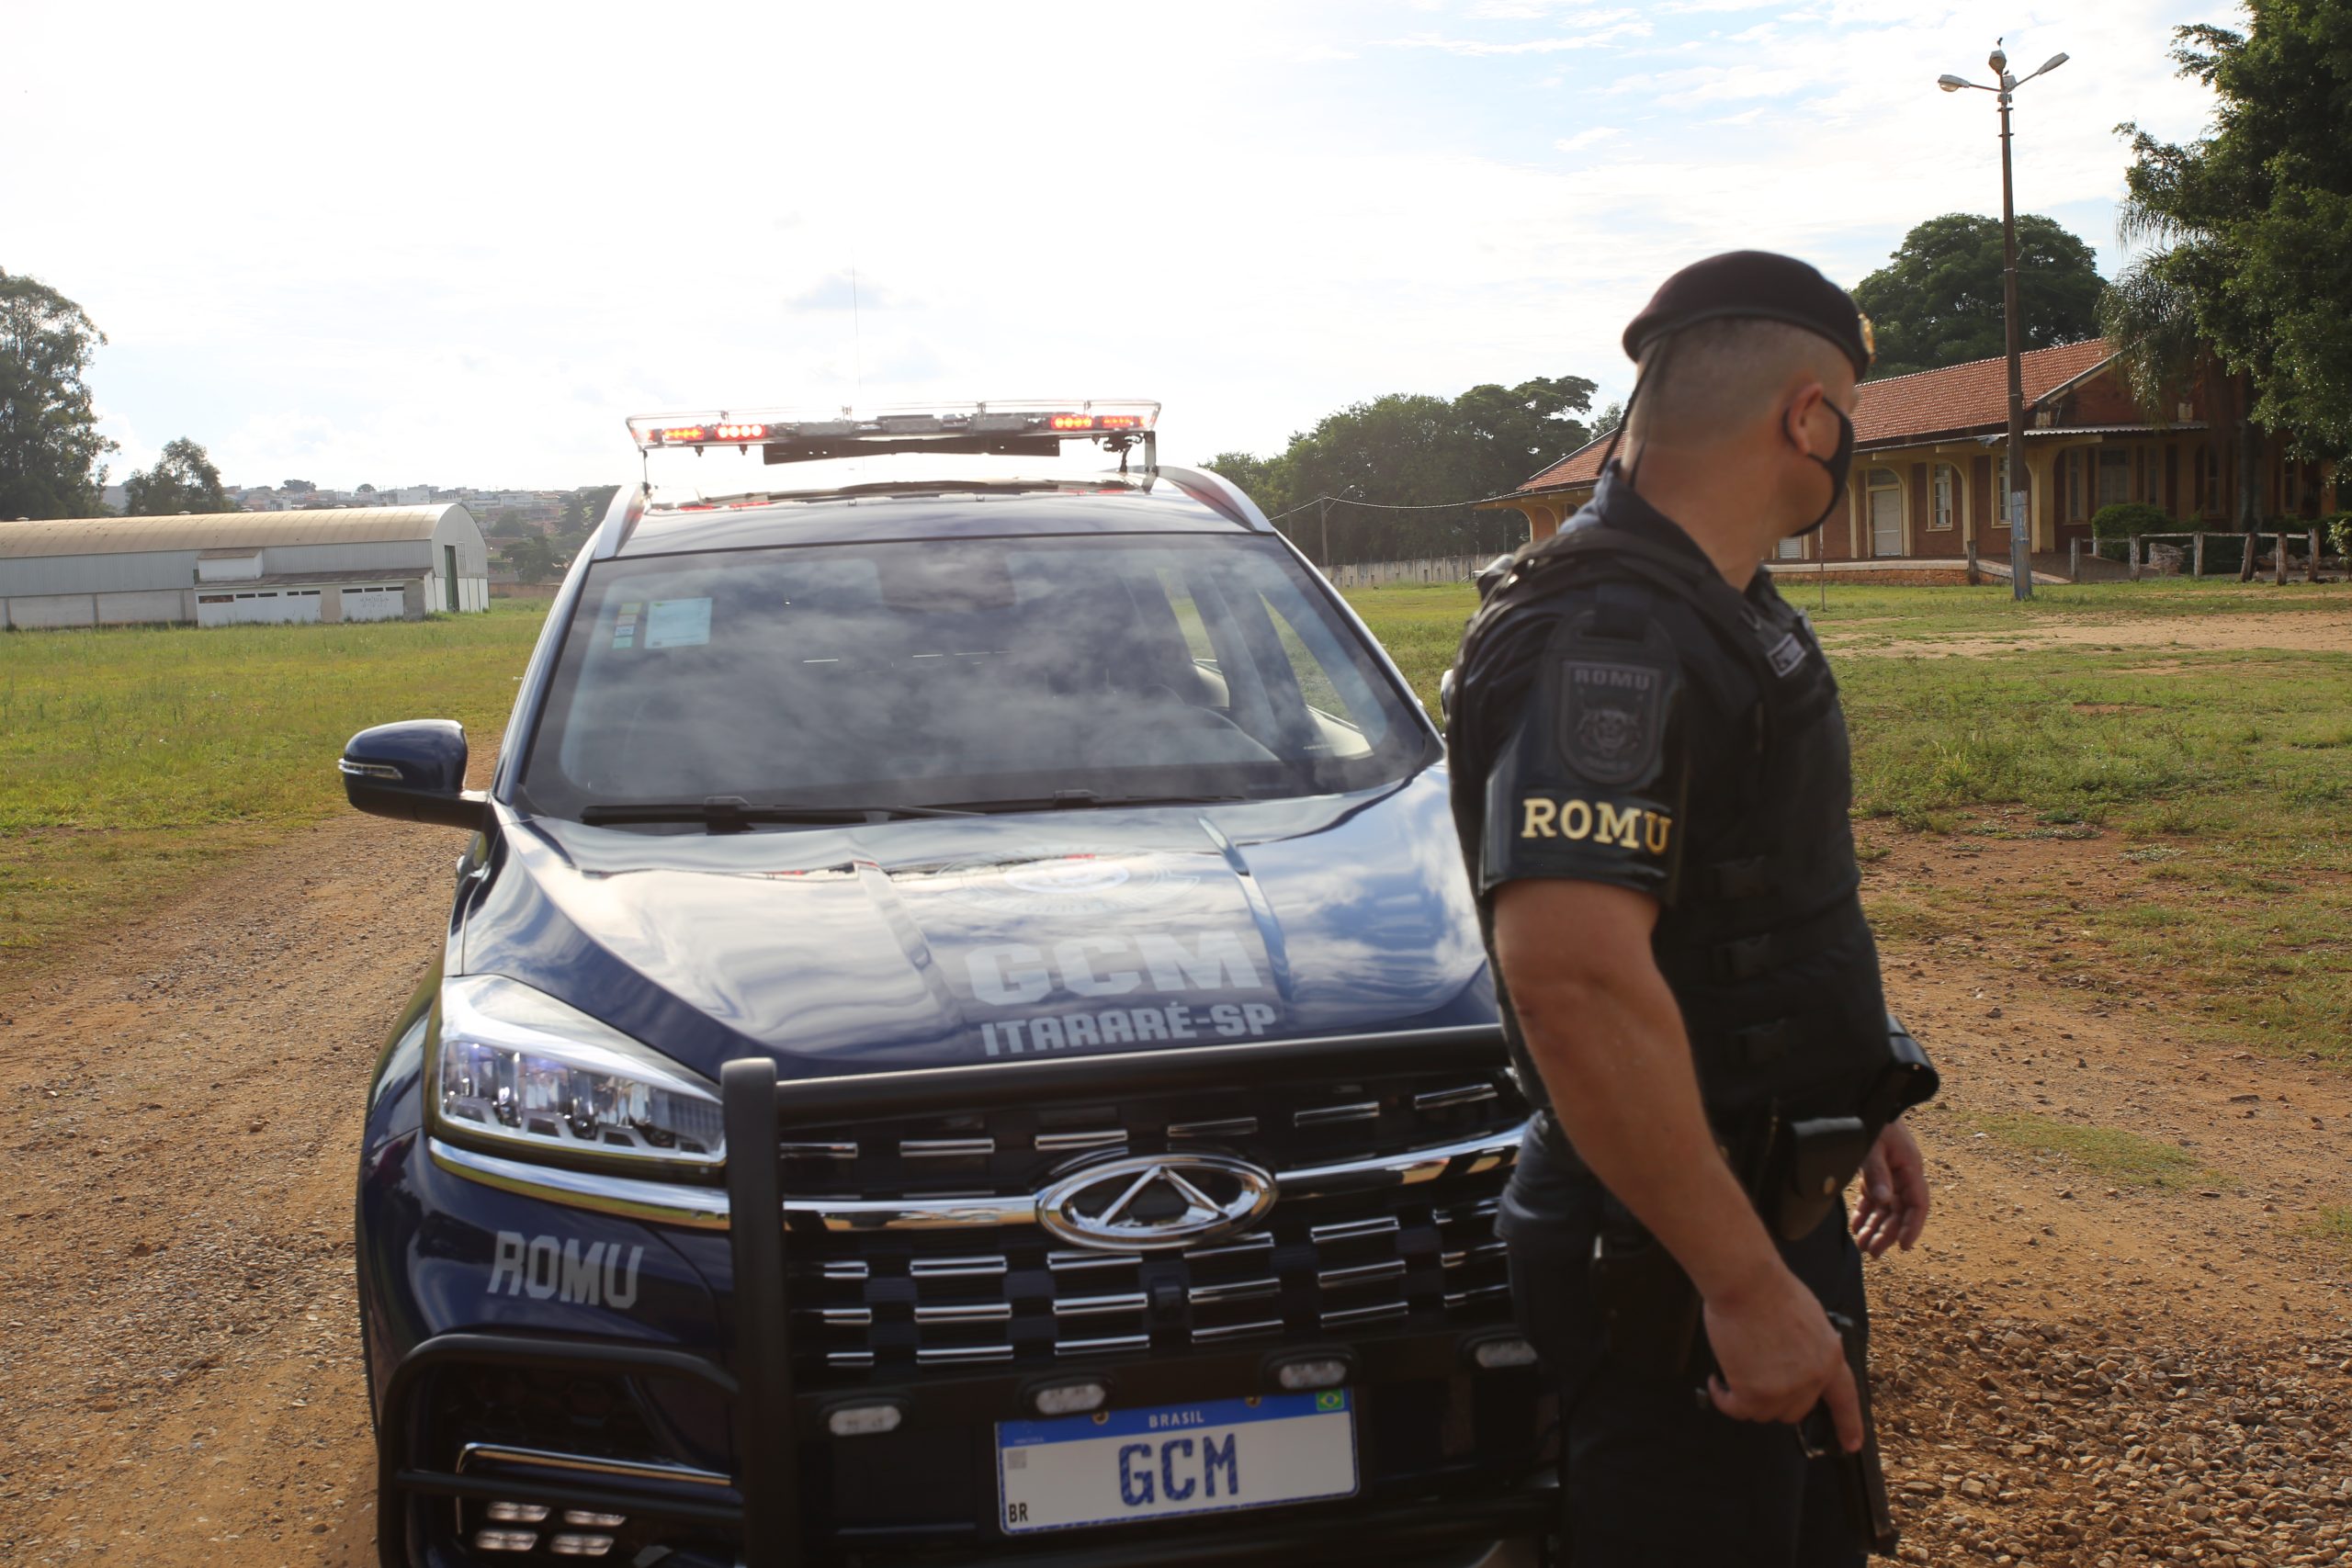 Após confronto, homem é detido e preso pela GCM de Itararé (SP) na Vila Novo Horizonte